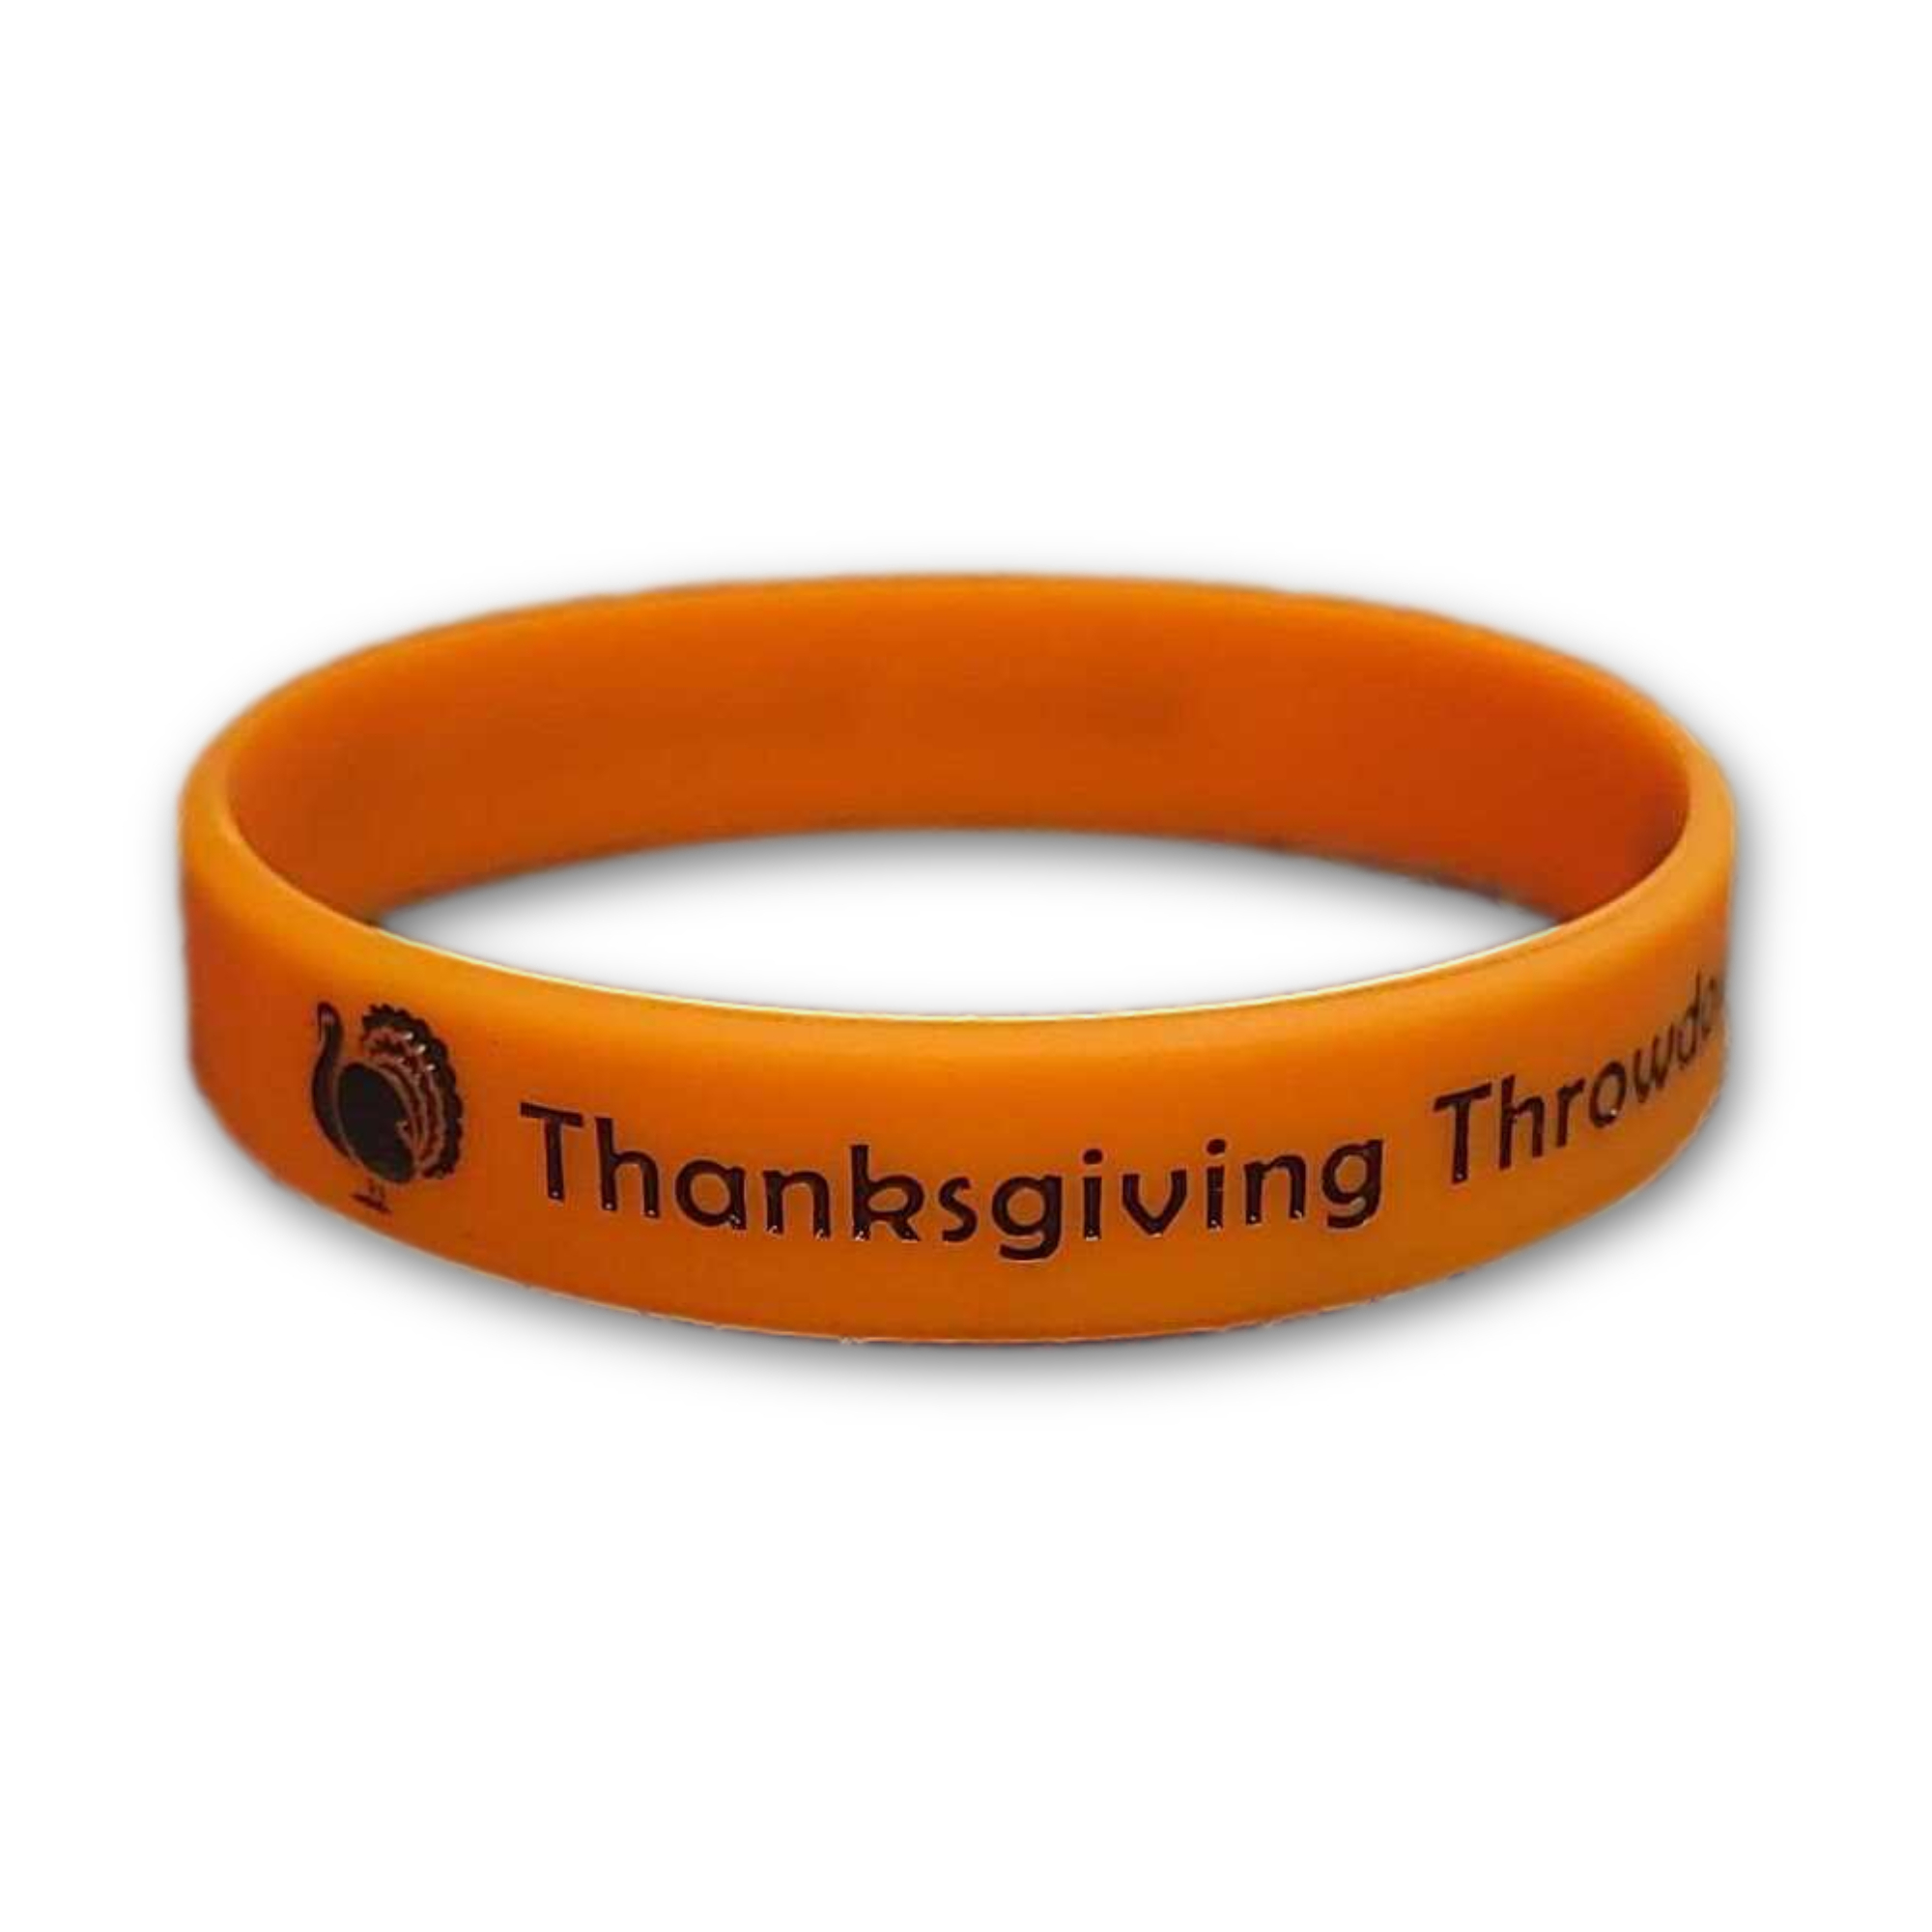 Thanksgiving Throwdown Wristband